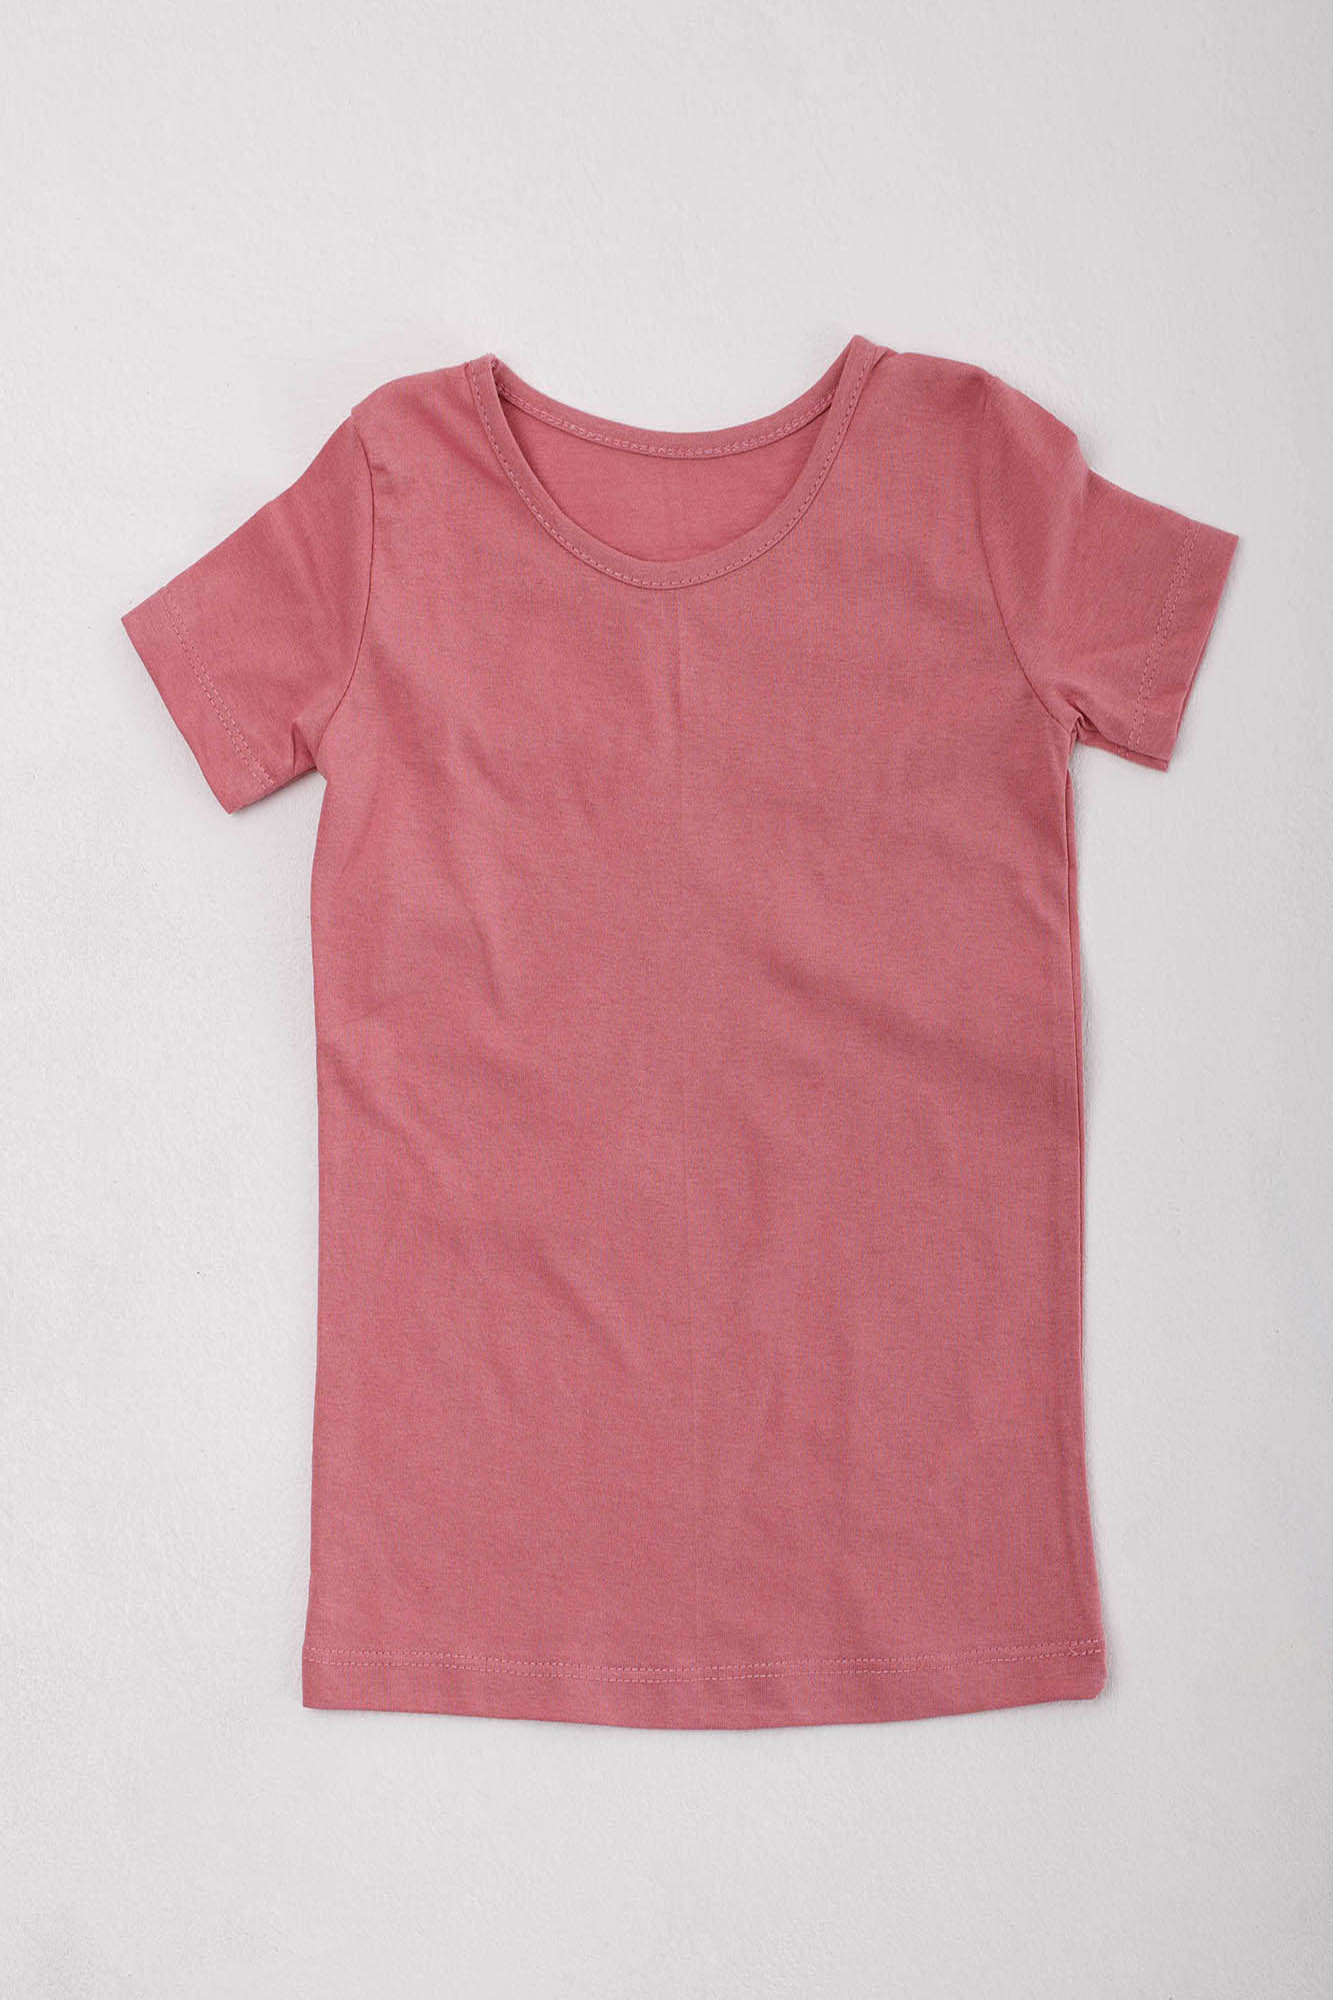 Детская футболка Aislin Цвет: Розовый (9-10 лет), размер 9-10 лет zar680326 Детская футболка Aislin Цвет: Розовый (9-10 лет) - фото 1